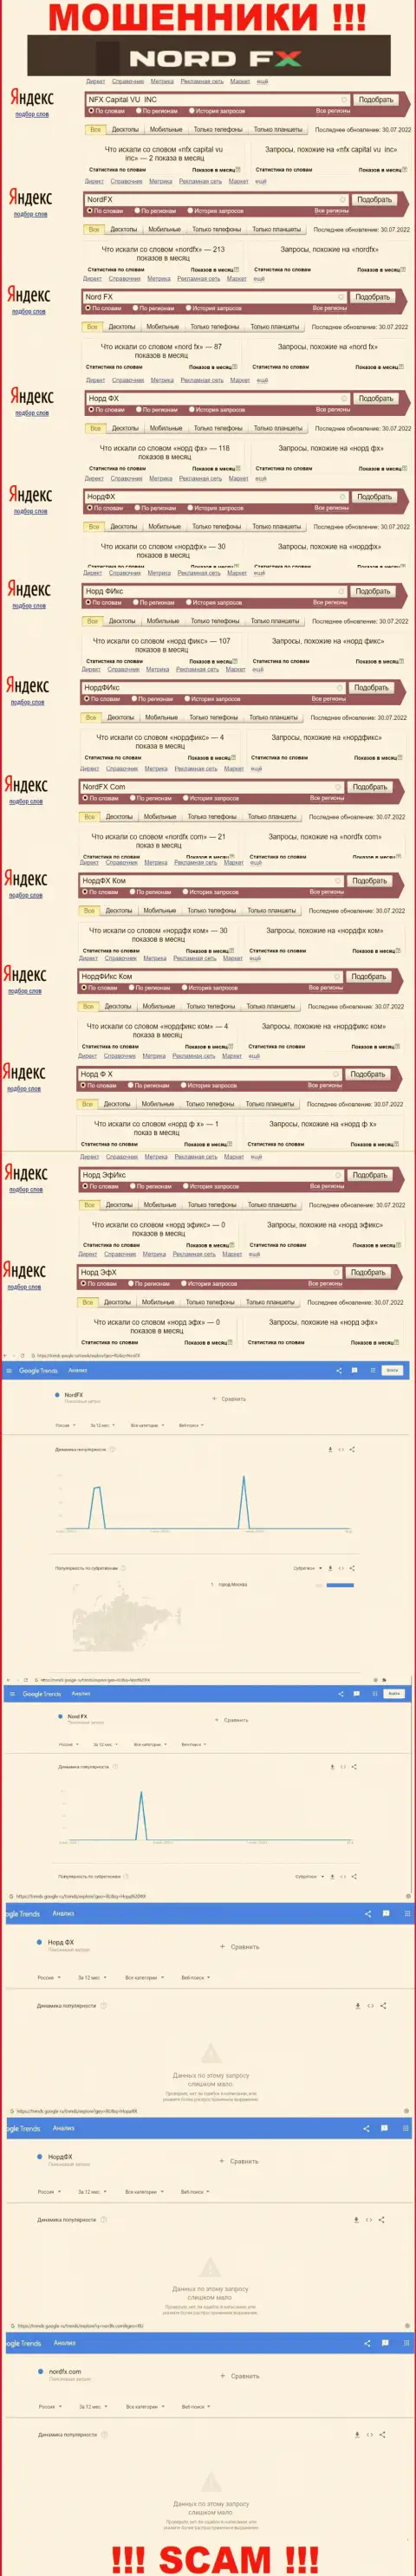 Количество online-запросов в поисковиках сети по бренду мошенников NordFX